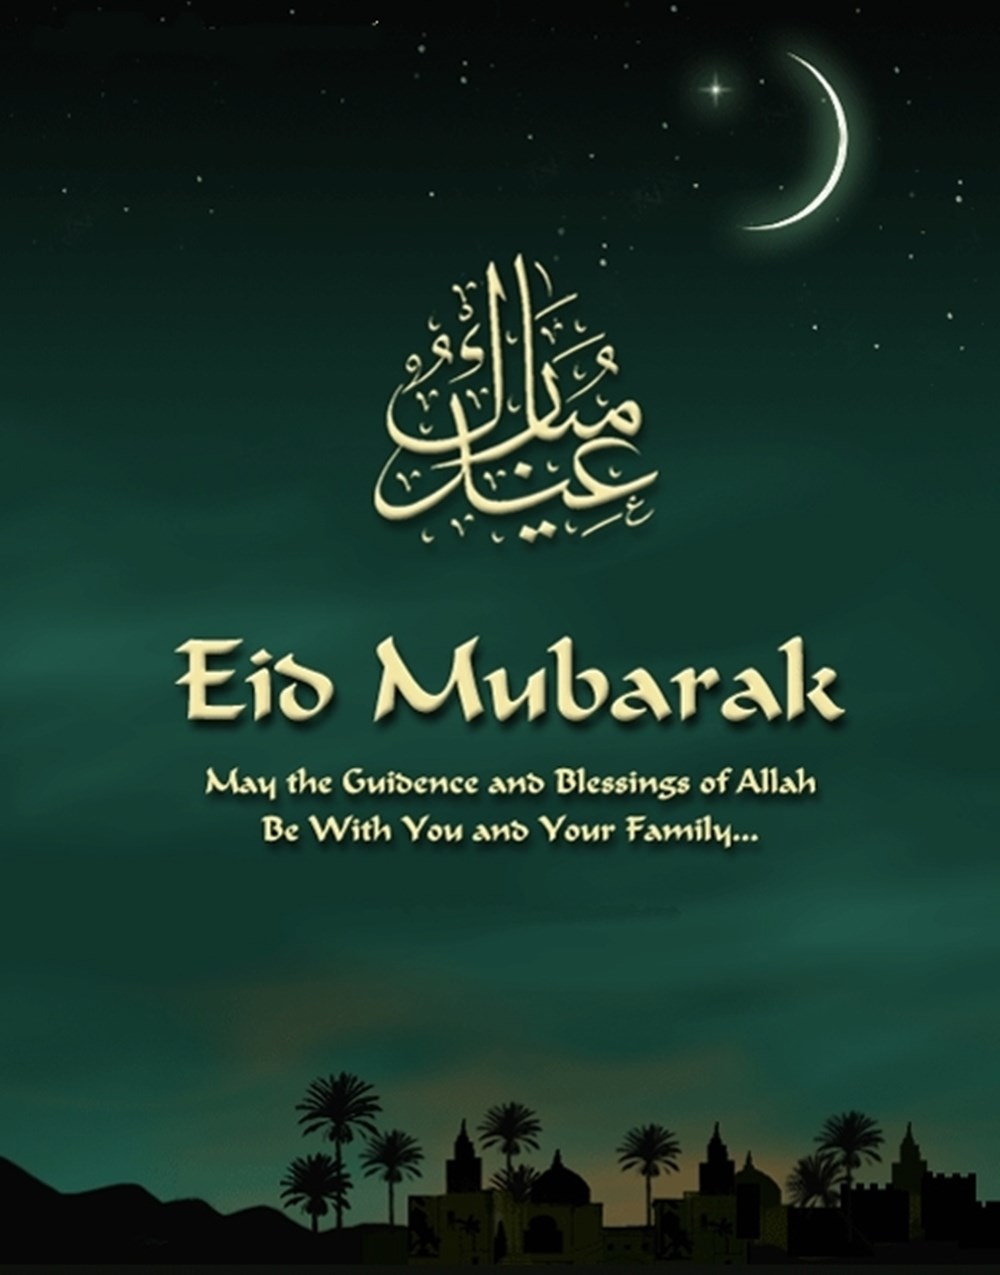 eid mubarak quotes